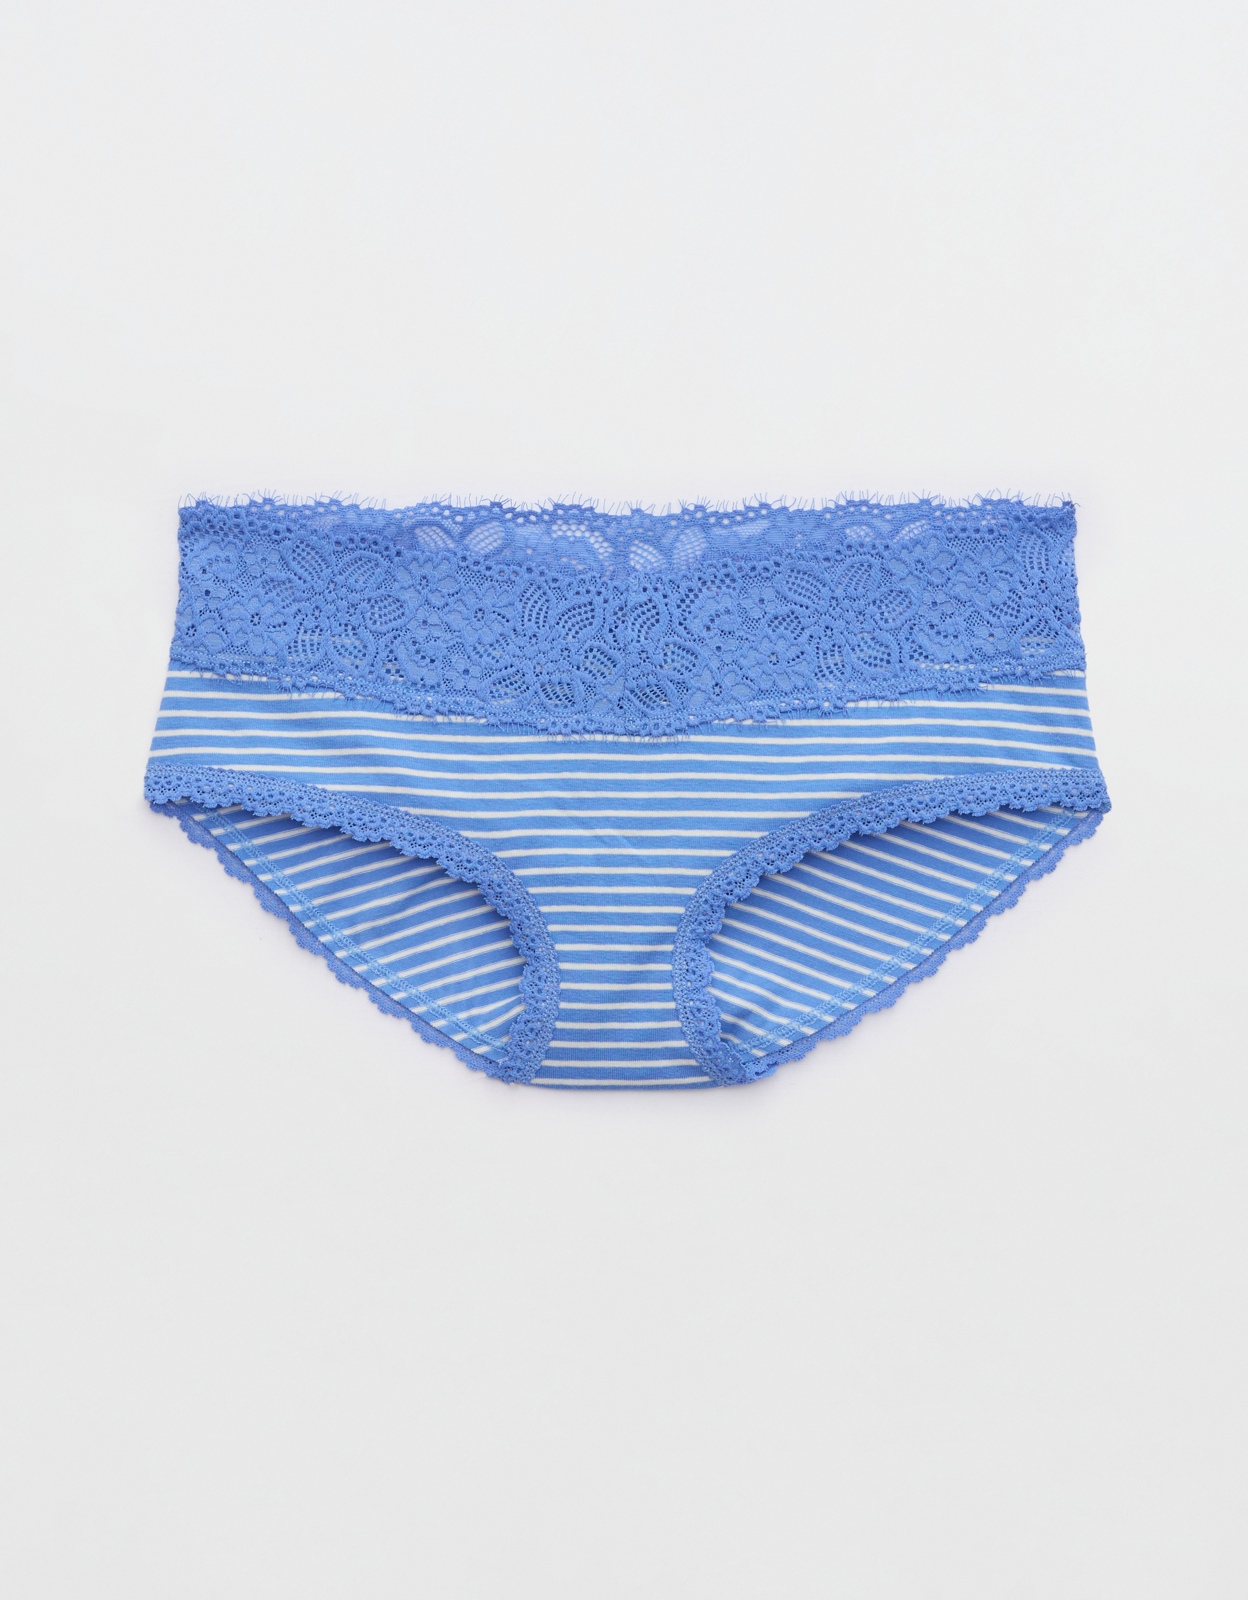 Buy Aerie Cotton Eyelash Lace Boybrief Underwear online